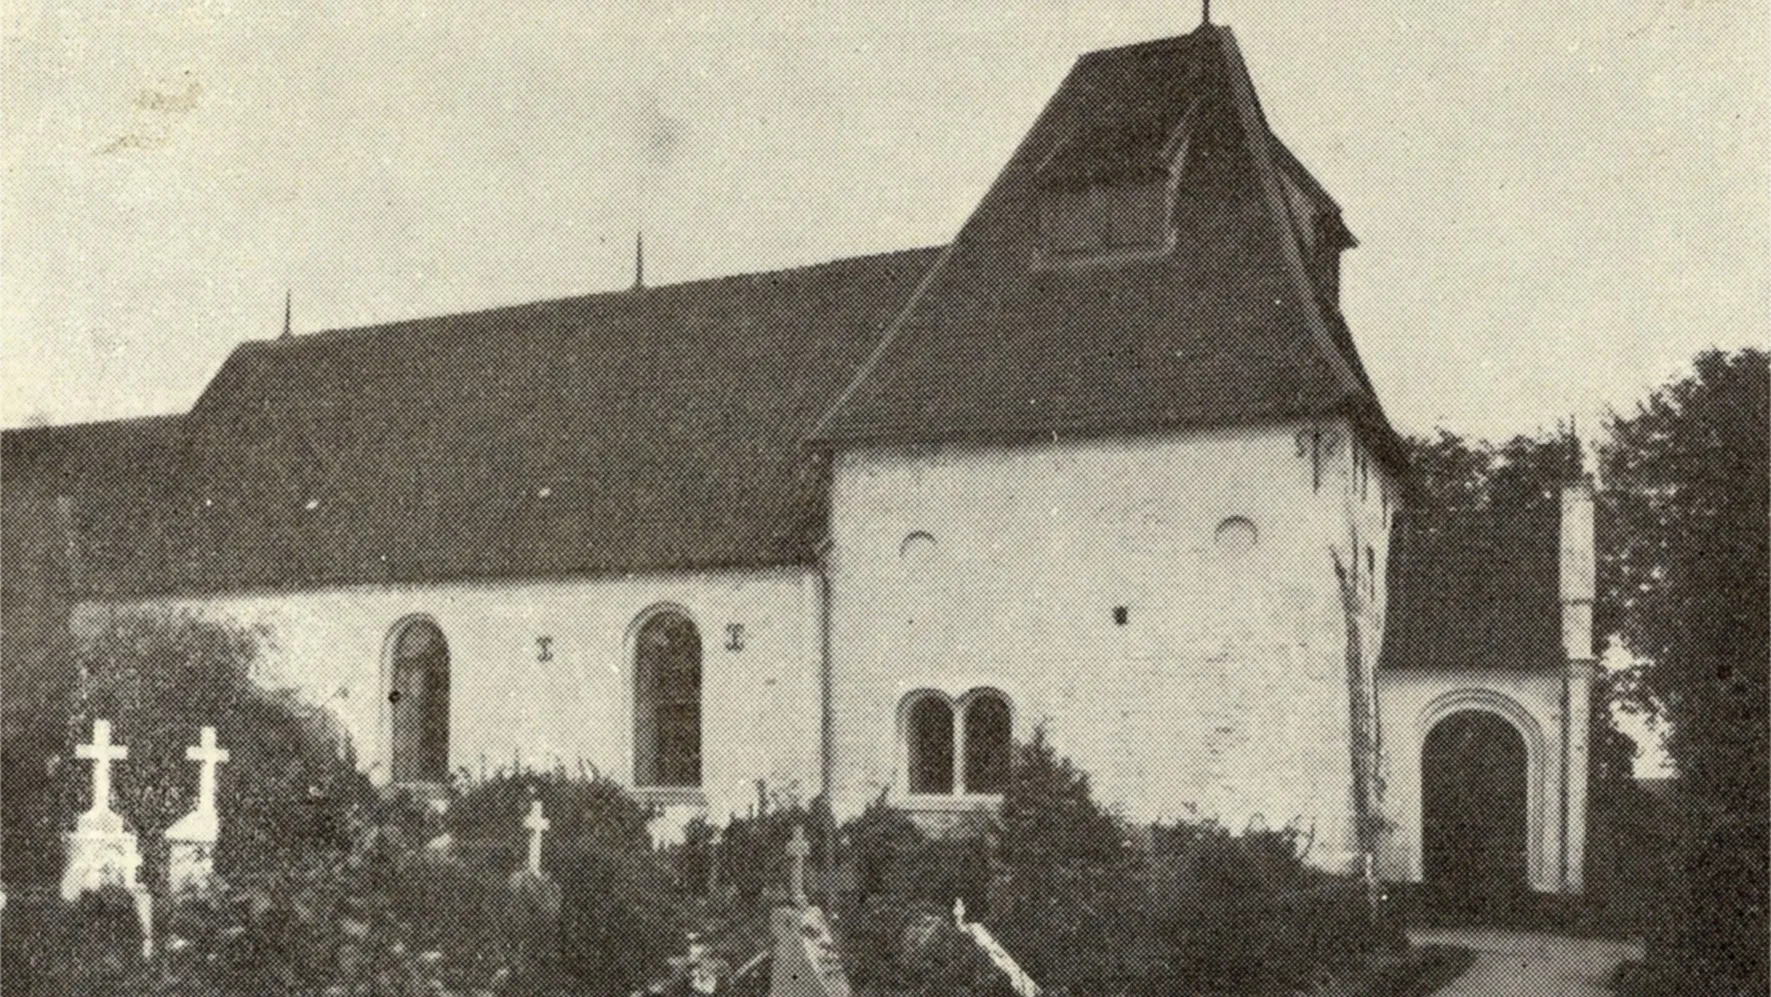 Gl. Haderslev Church - ca. 1900